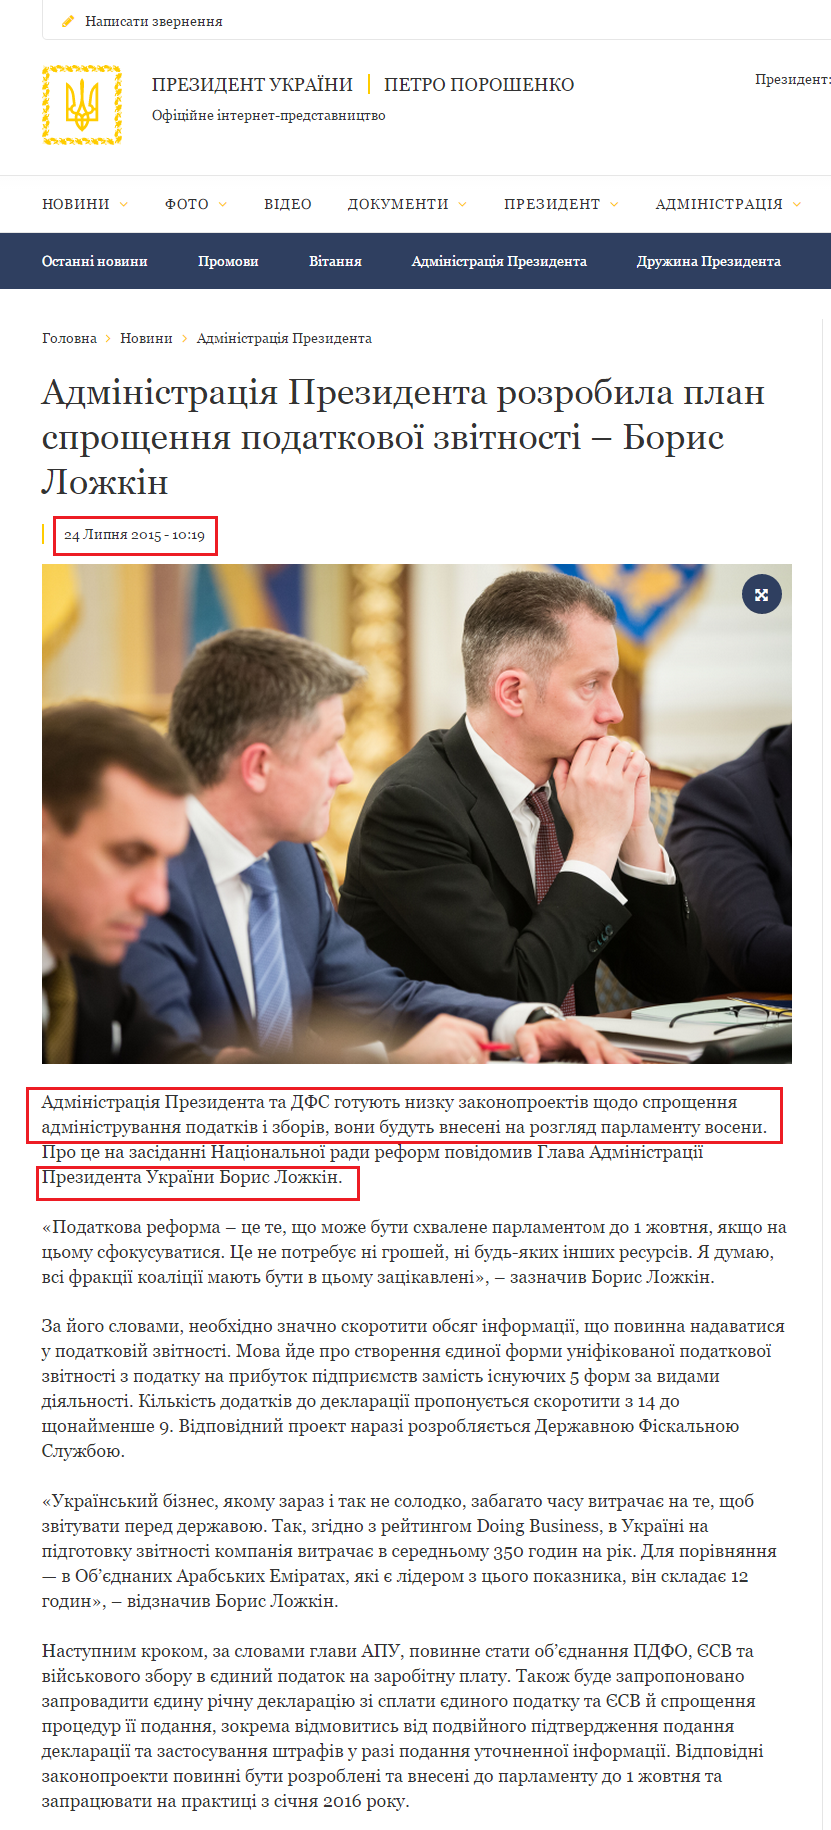 http://www.president.gov.ua/news/administraciya-prezidenta-rozrobila-plan-sproshennya-podatko-35705